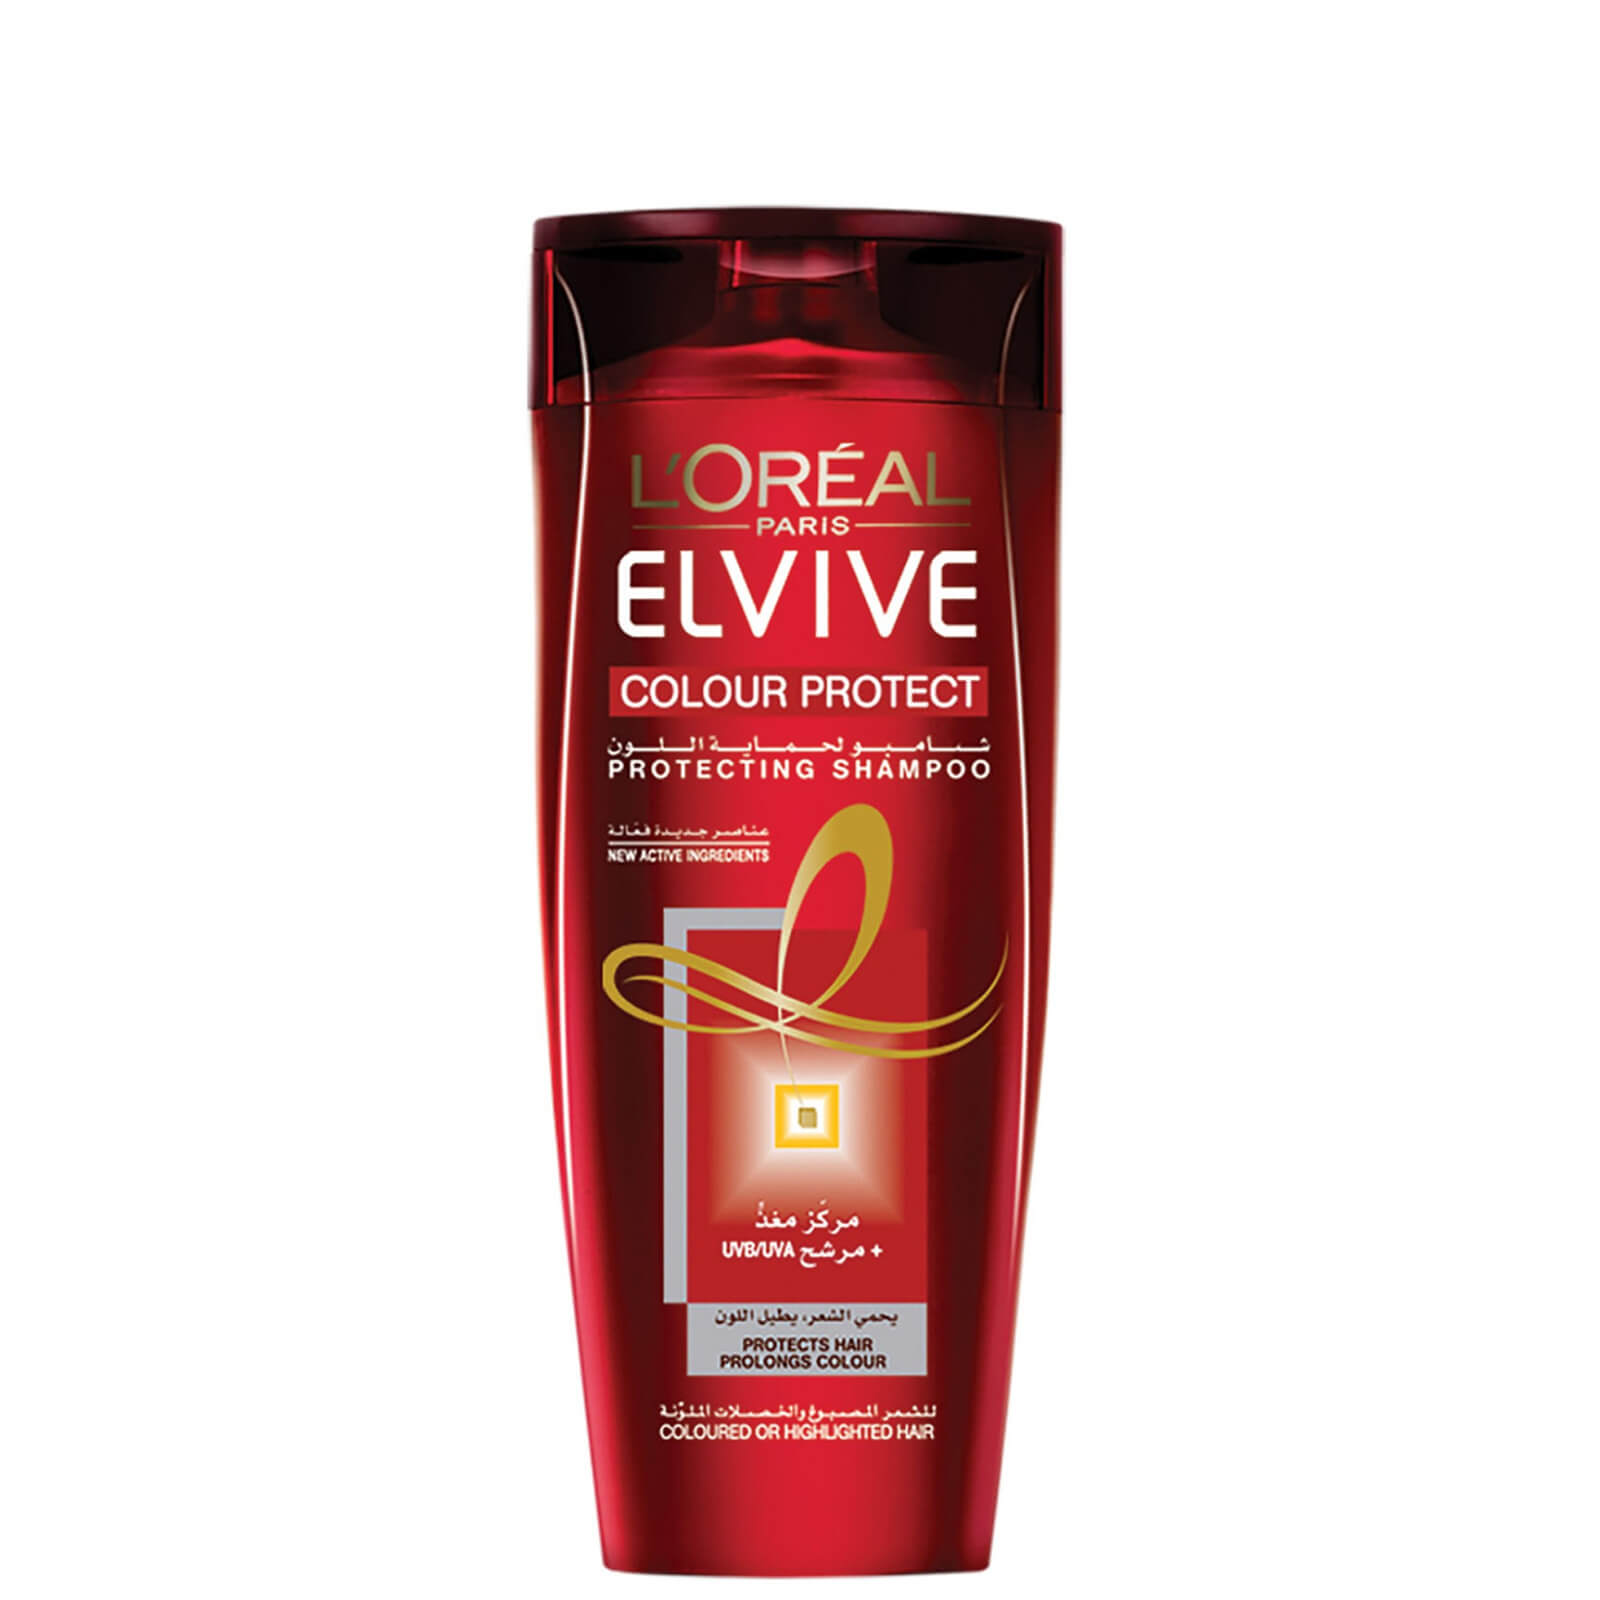 Image of L'Oréal Paris Elvive Colour Protect Shampoo 600 ml